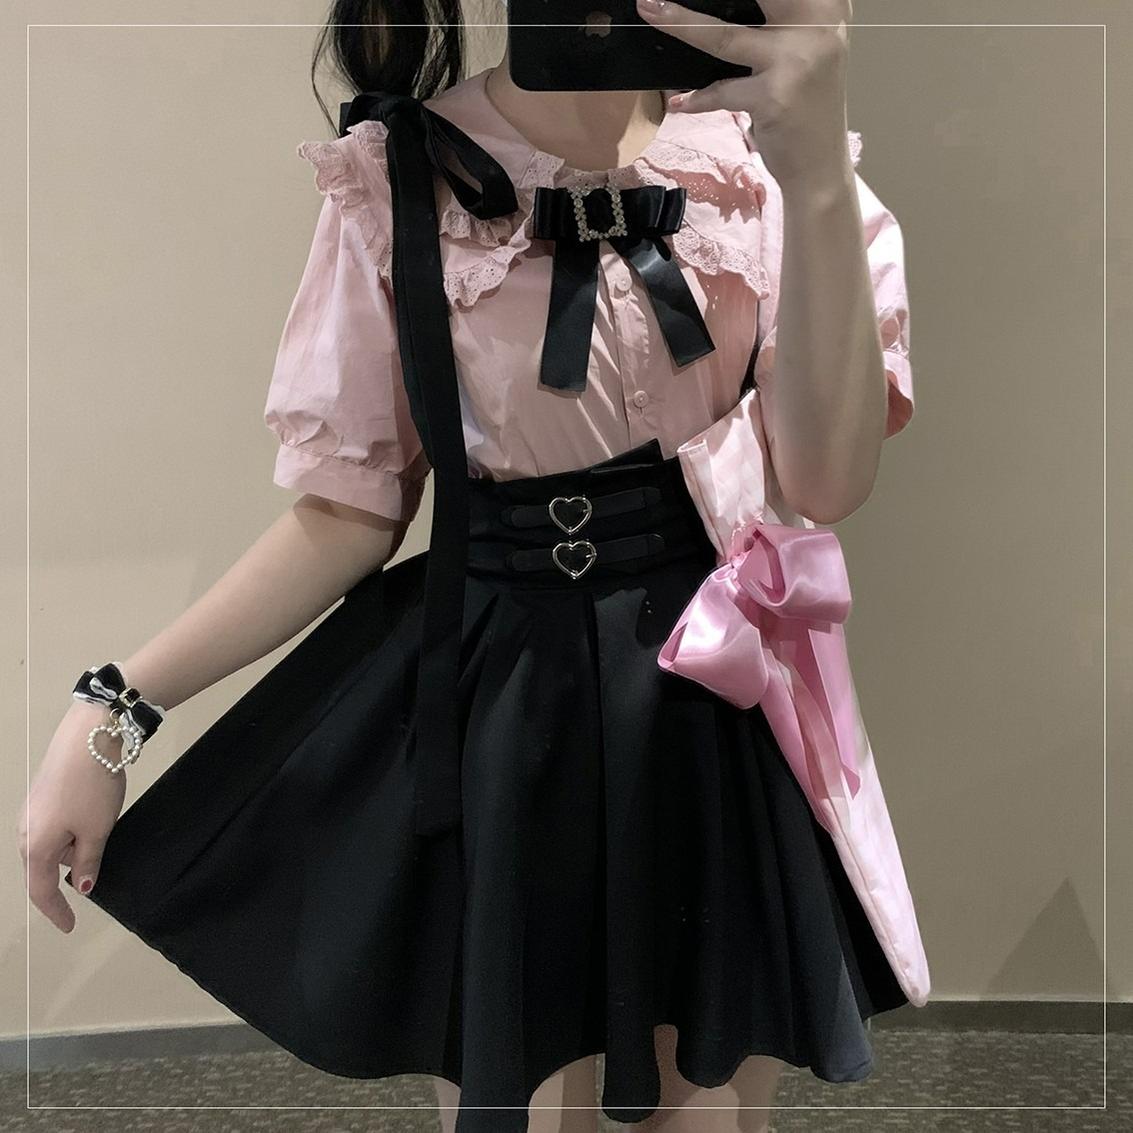 Jirai Kei Overall Dress Salopette Heart Buckle Suspender Skirt 35386:526816